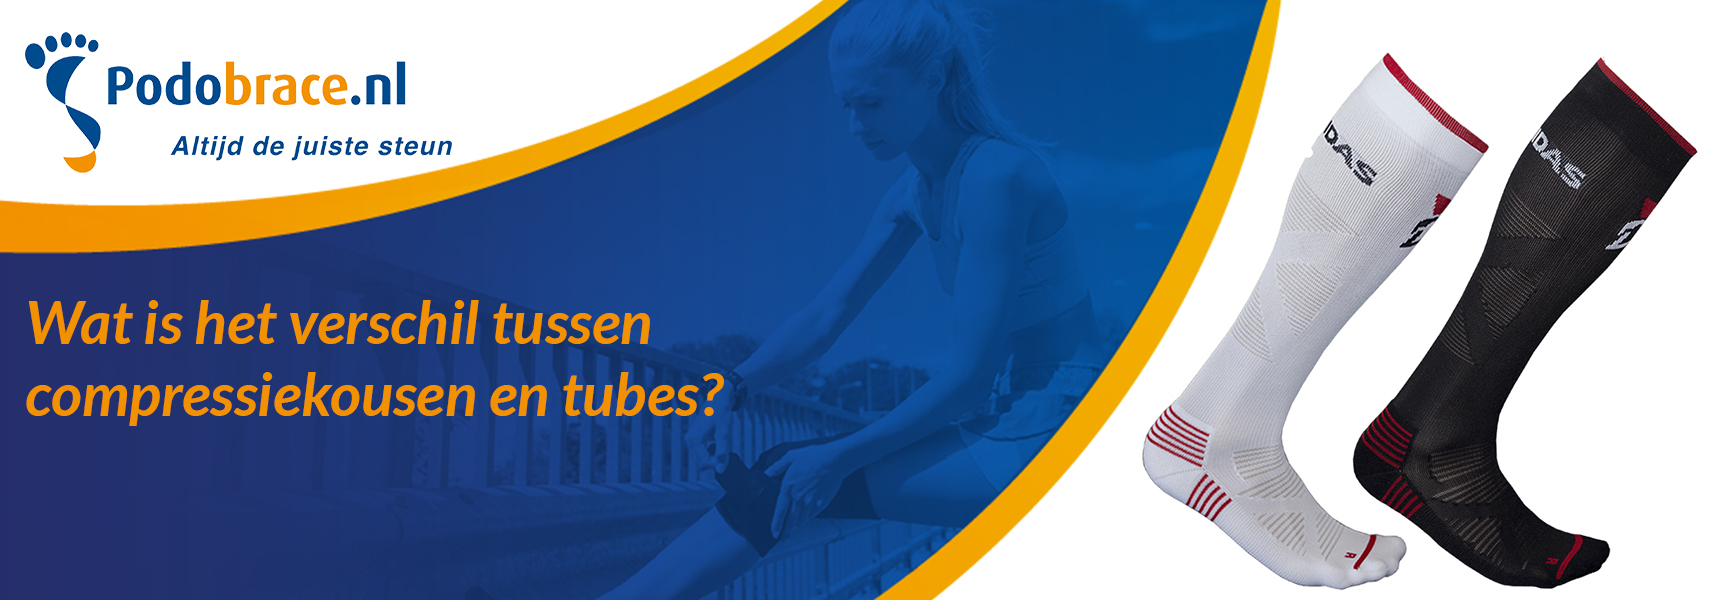 Wat is het verschil compressiekousen en tubes? | Podobrace.nl